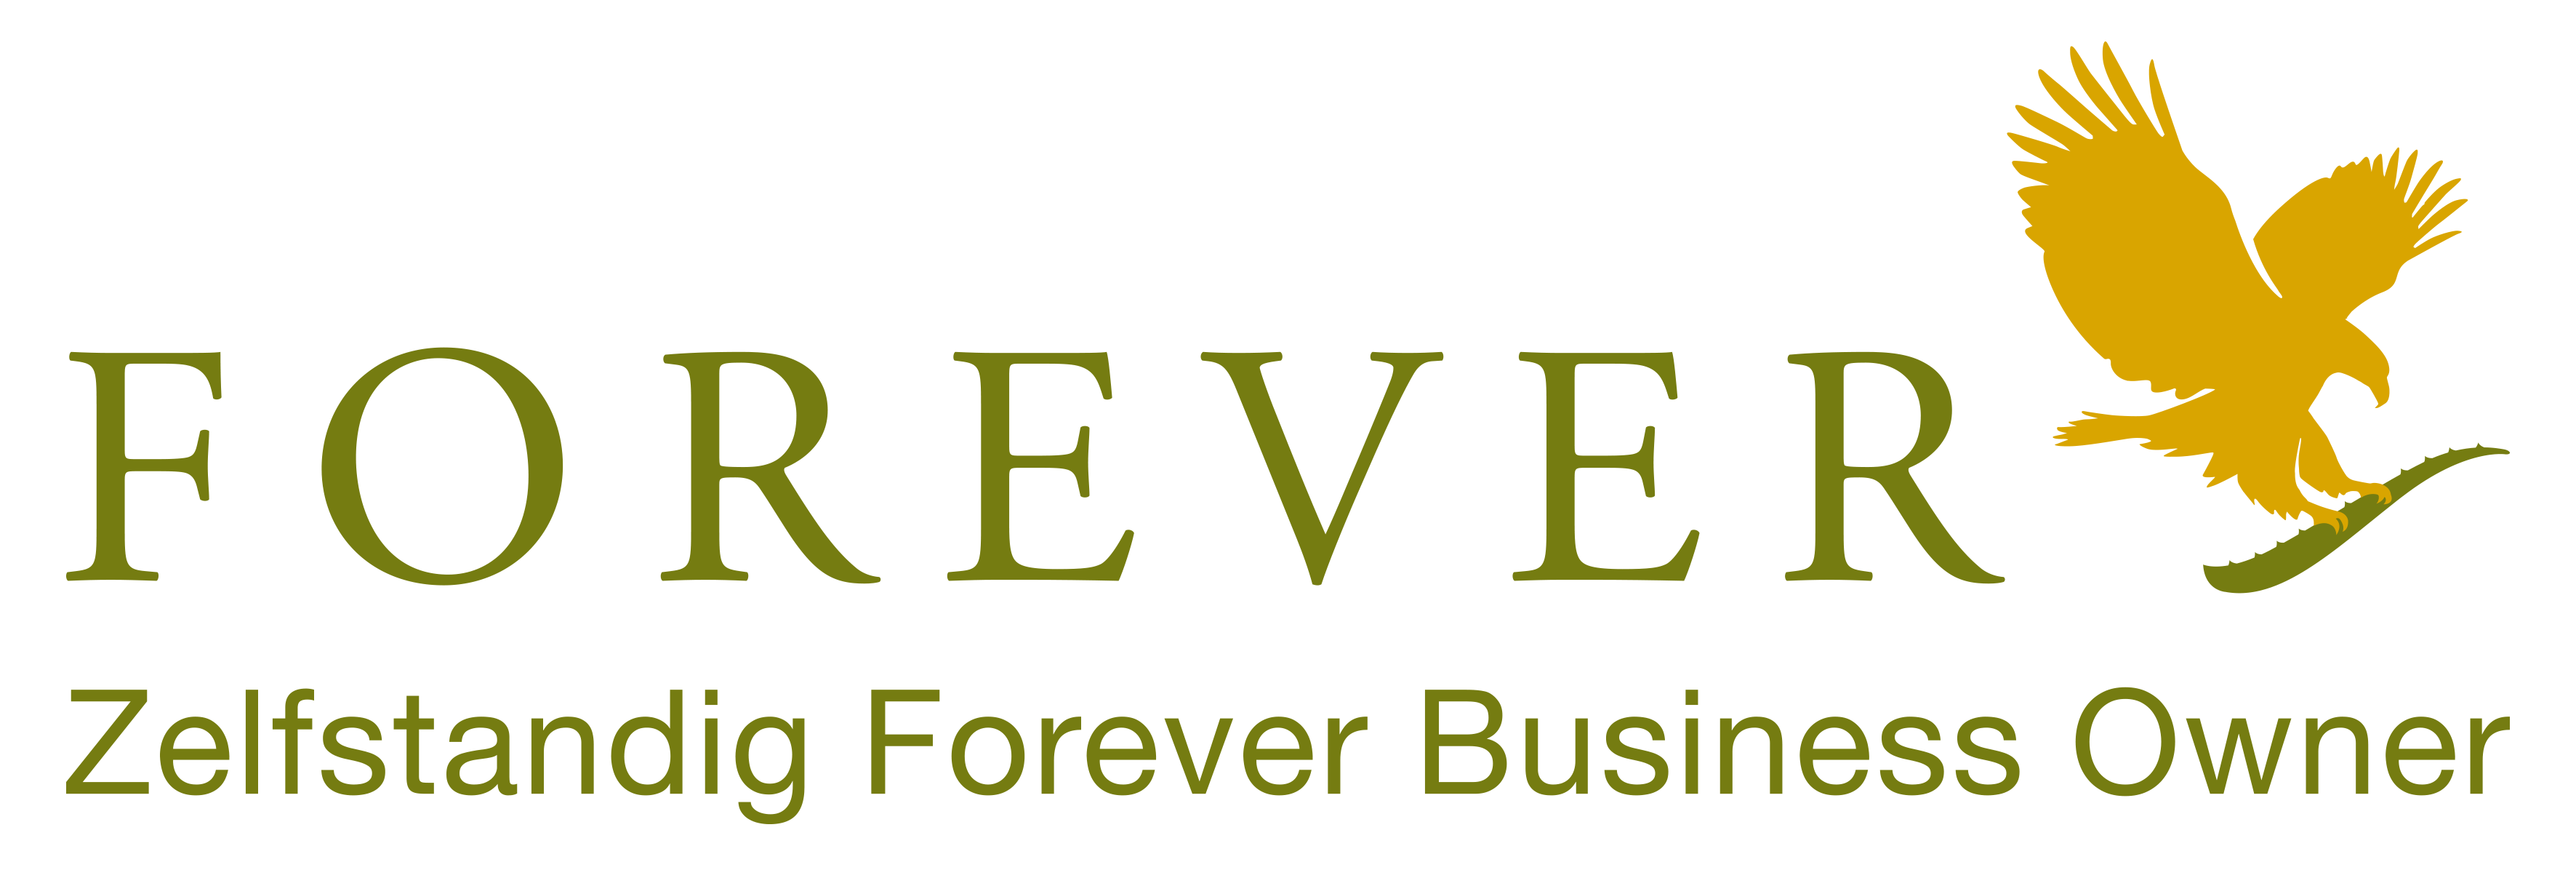 Forever Aloe vera suministra productos Forever a clientes de Benelus y Francia como Empresario Independiente de Forever Living. Compre sus productos Forever Living en Bélgica, Países Bajos, Luxemburgo y Francia